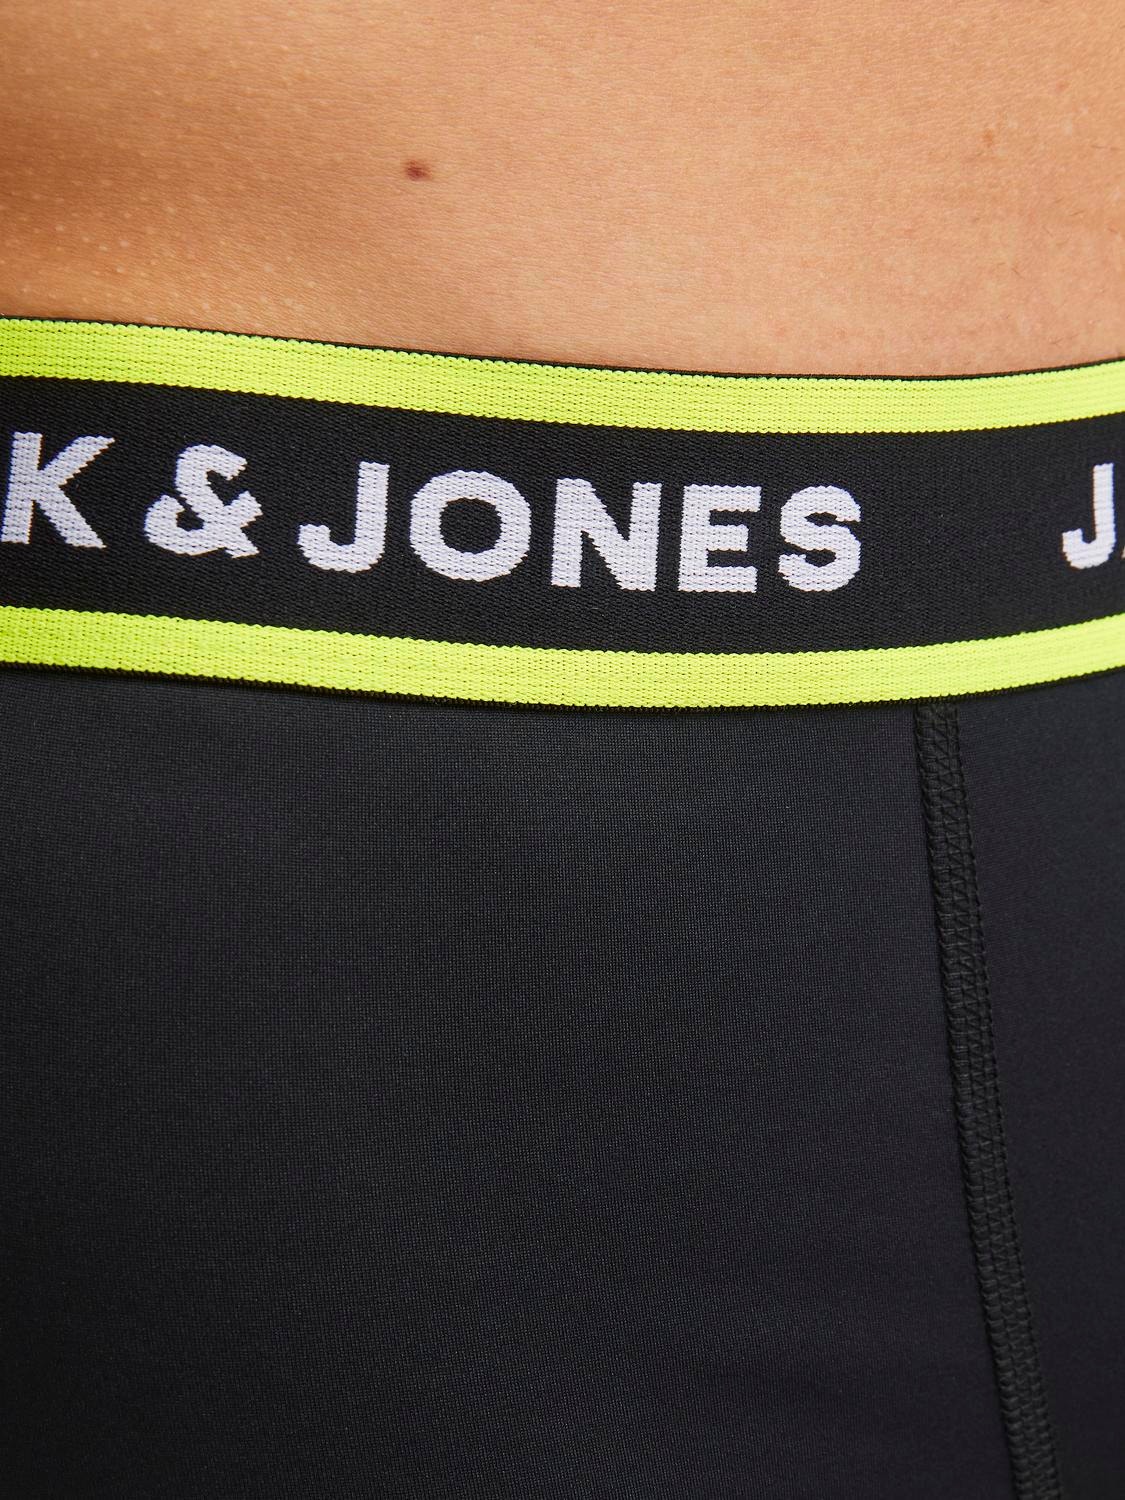 Jack & Jones Confezione da 3 Boxer -Black - 12252655